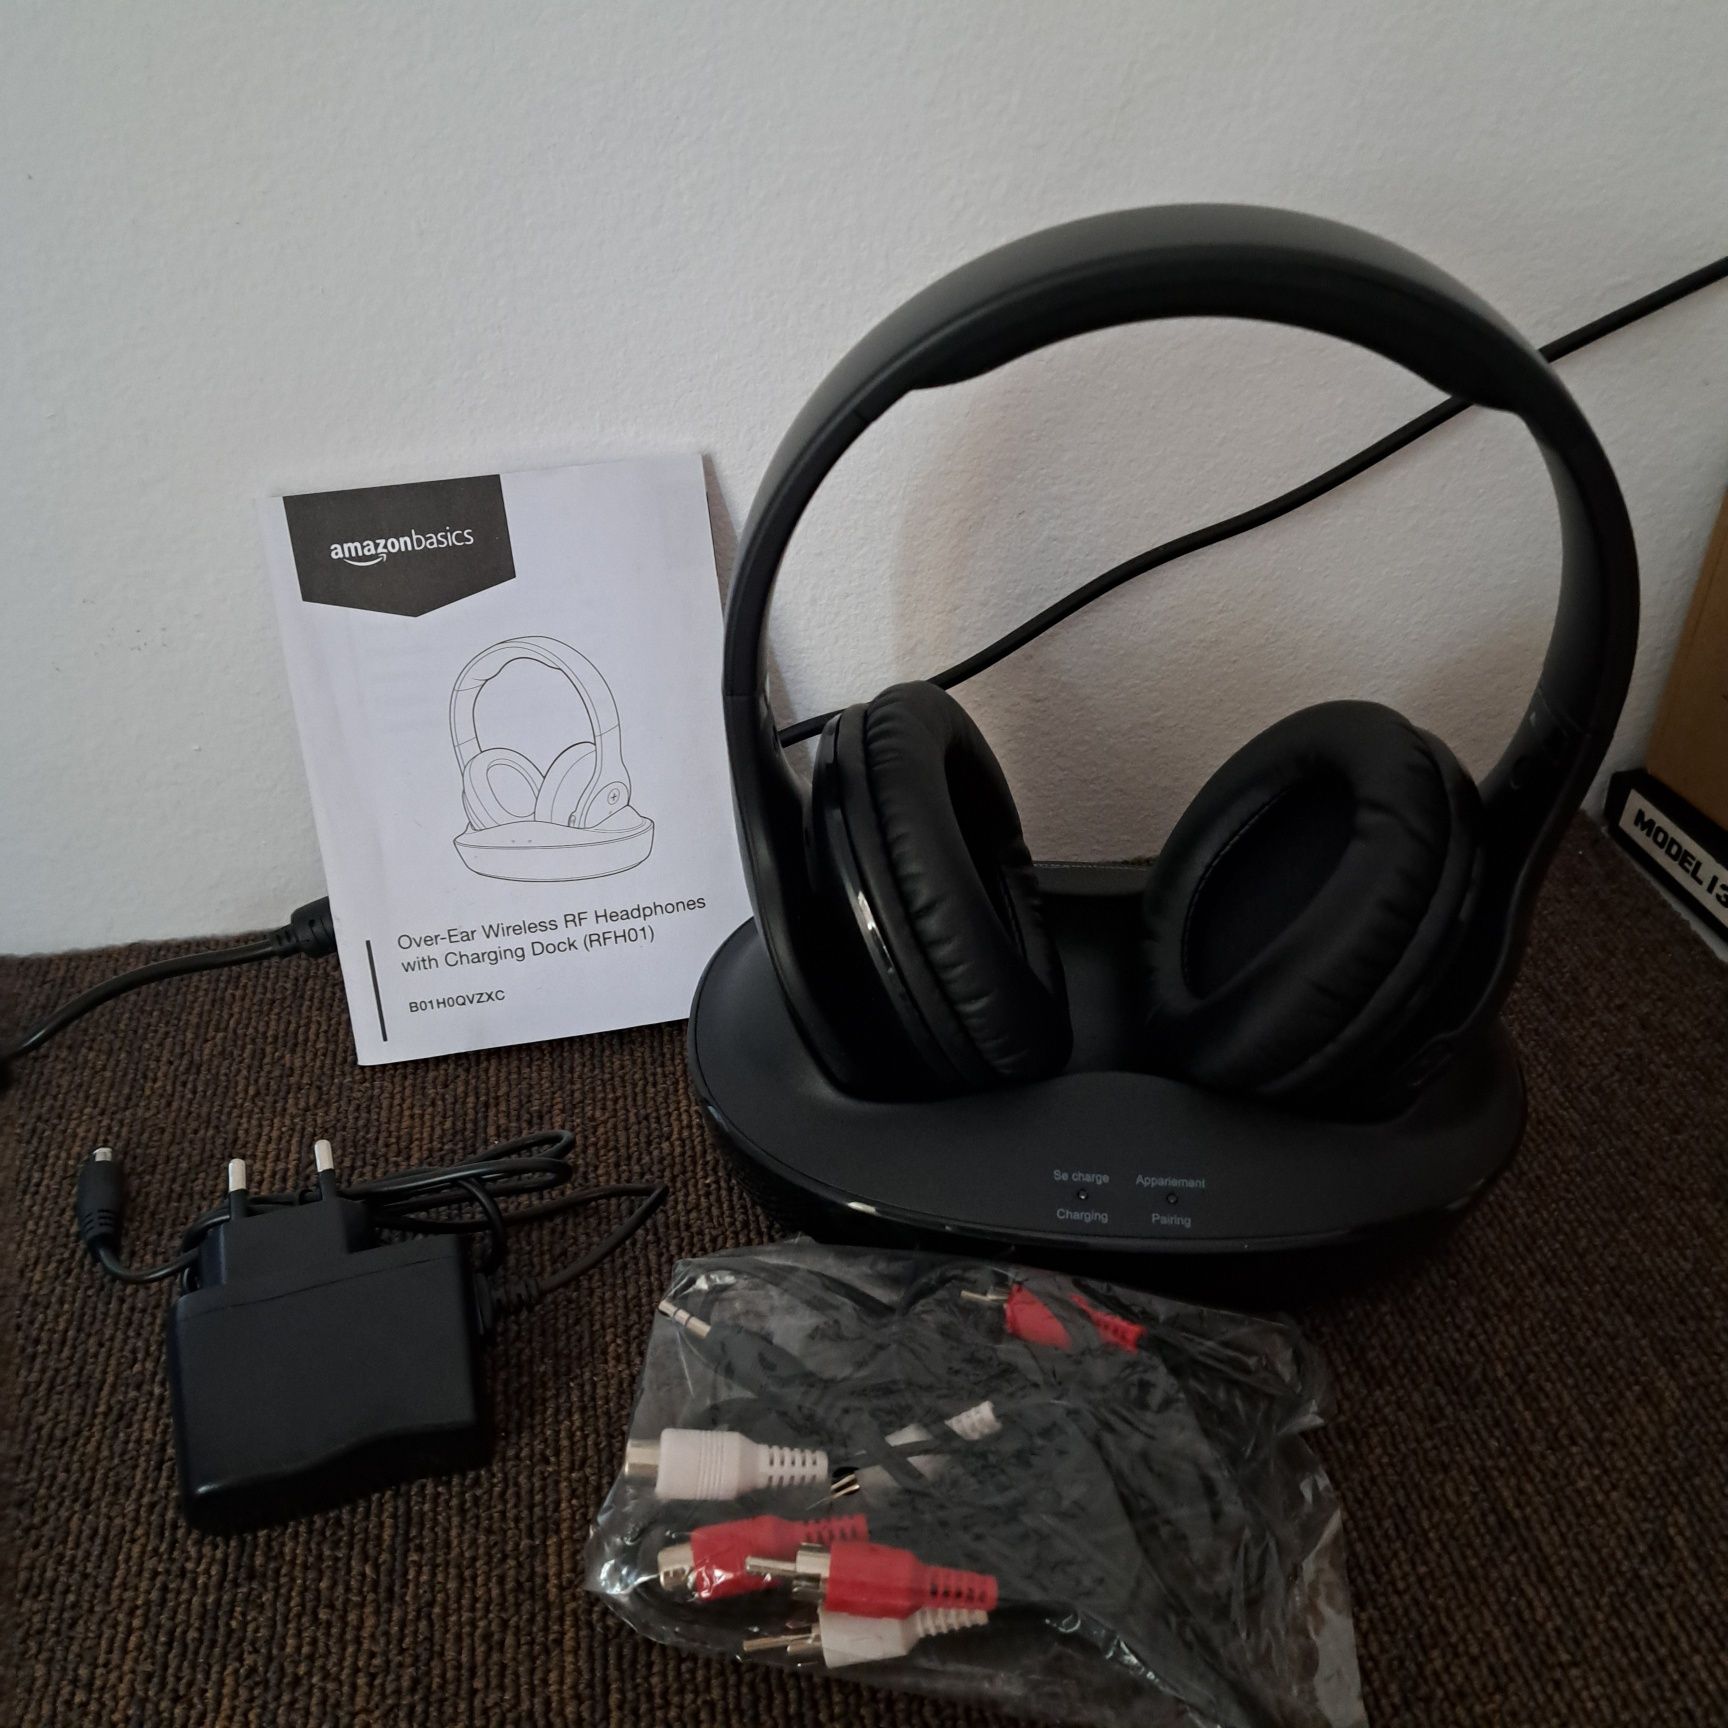 Słuchawki bezprzewodowe Amazon Basic RFH01 .
40
 zł

.